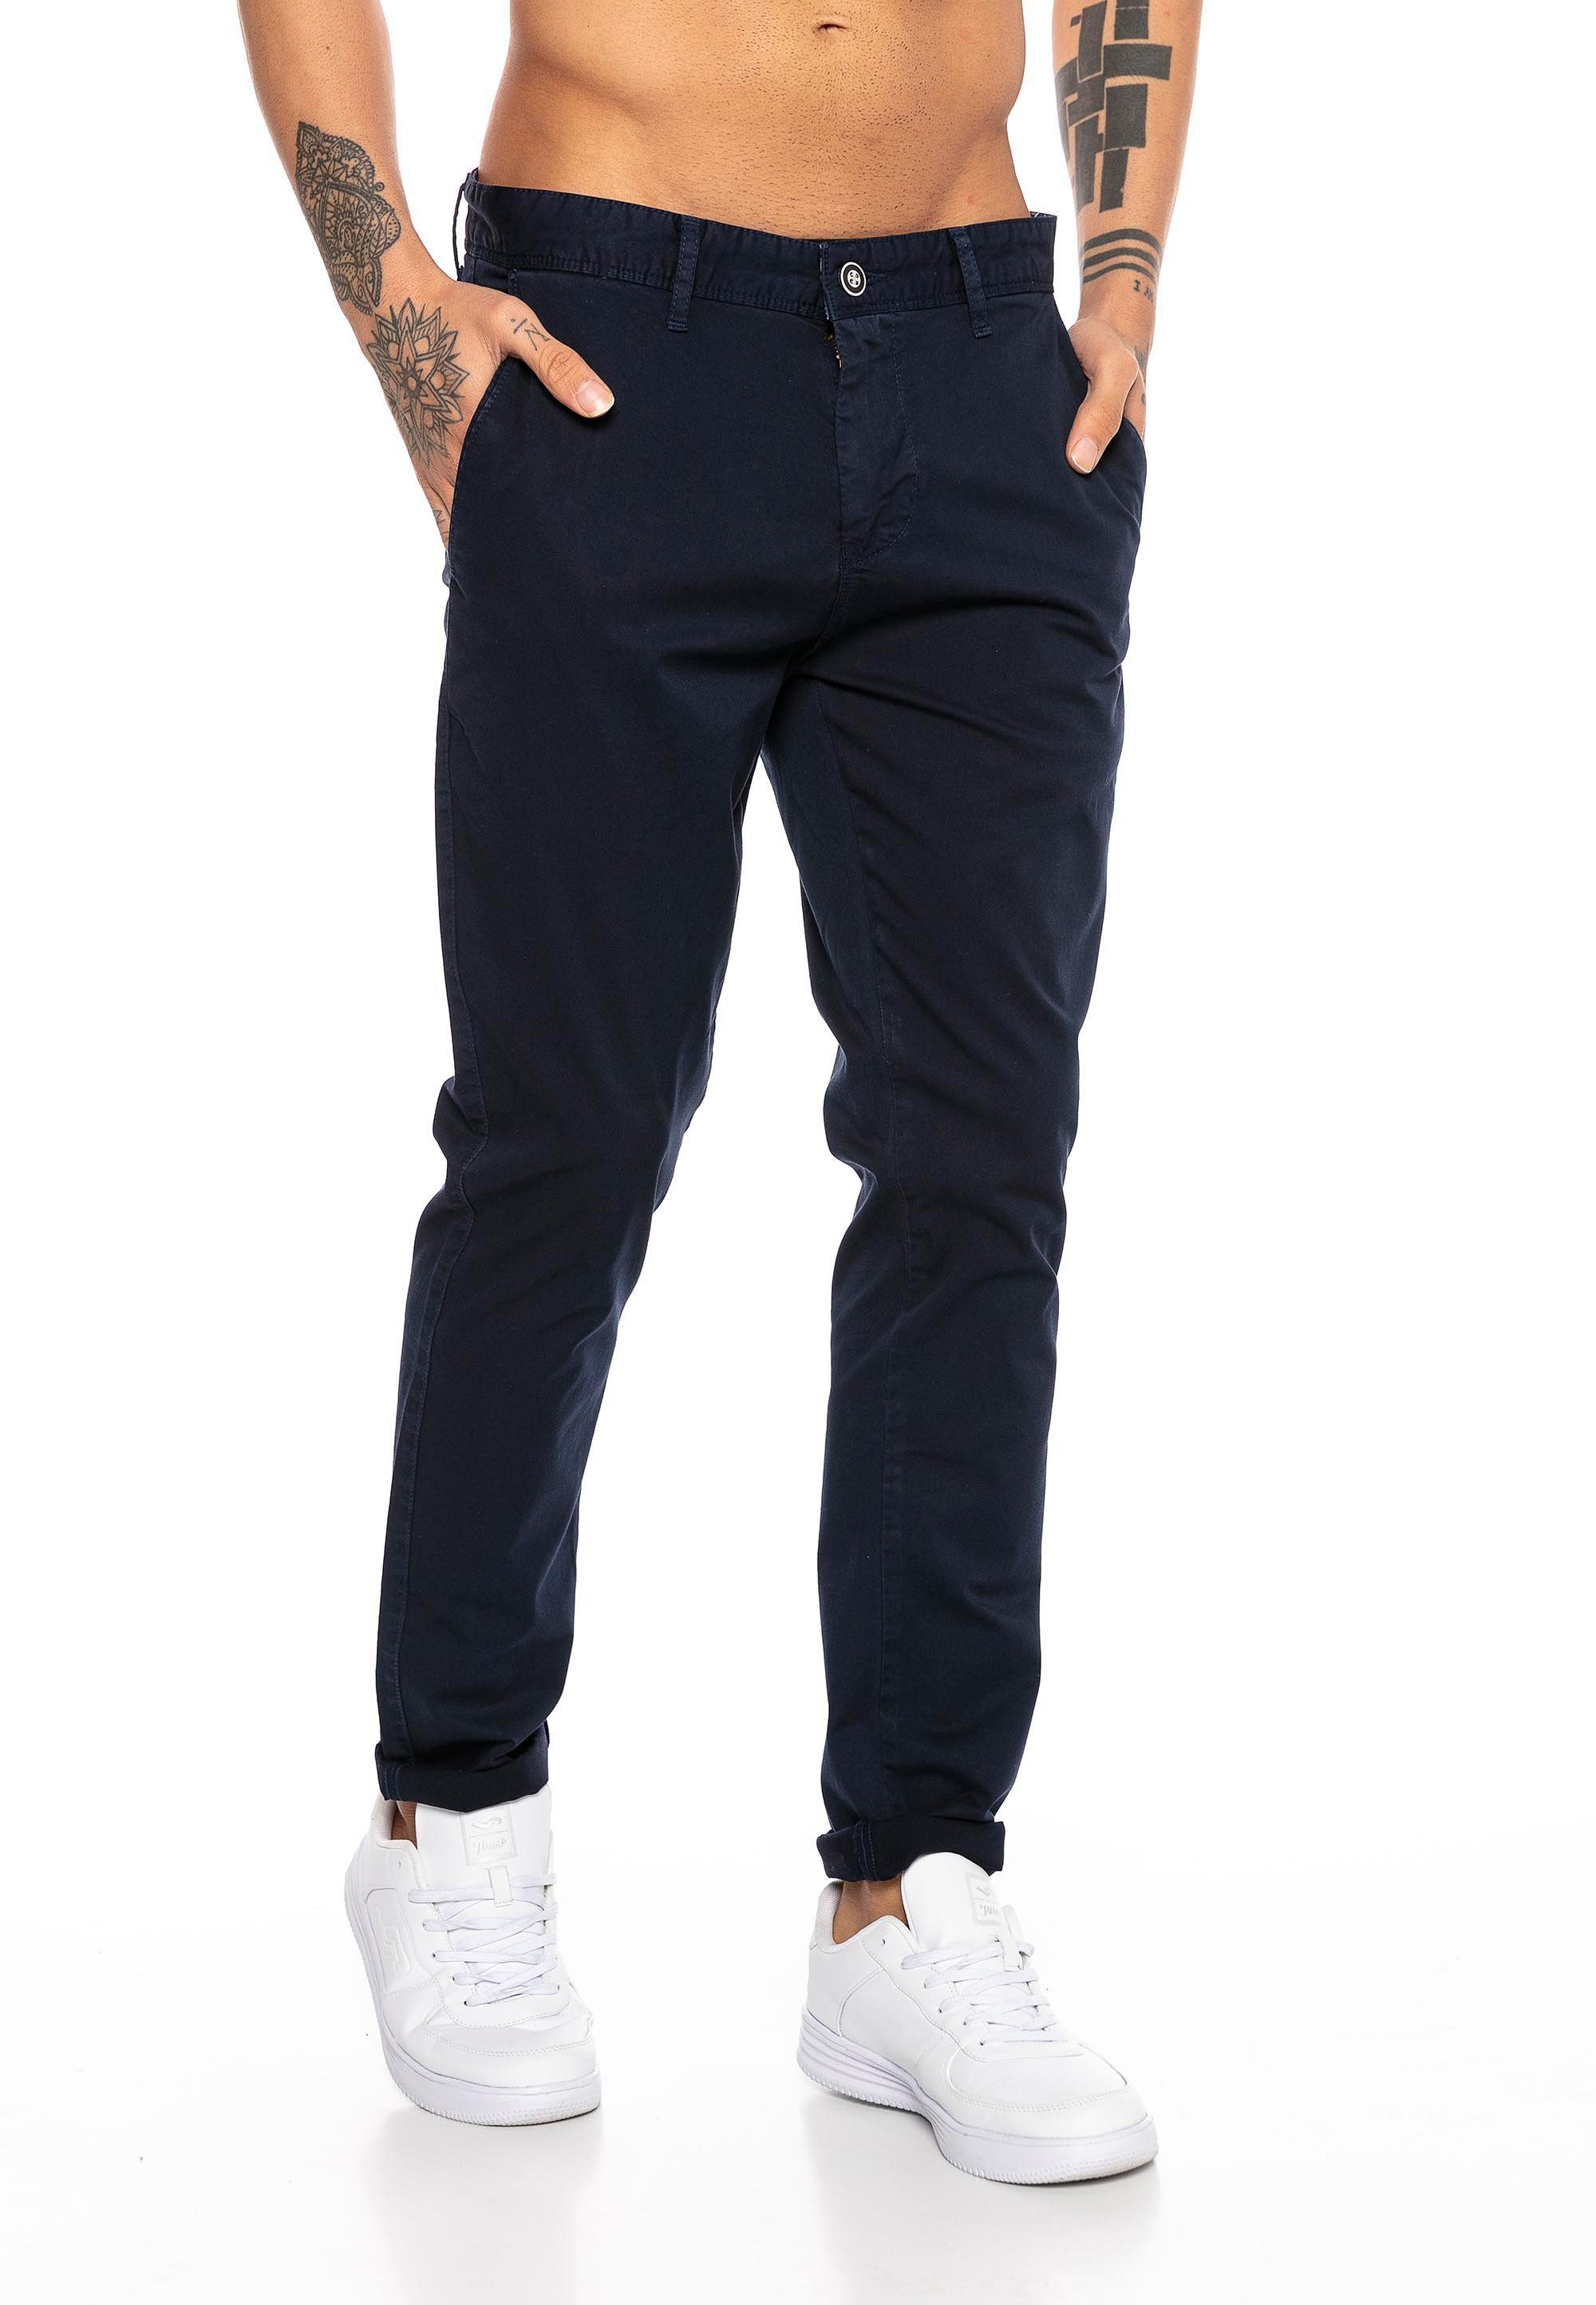 RedBridge Chinohose Premium Allrounder Hose vielseitig kombinierbar Navy Blau